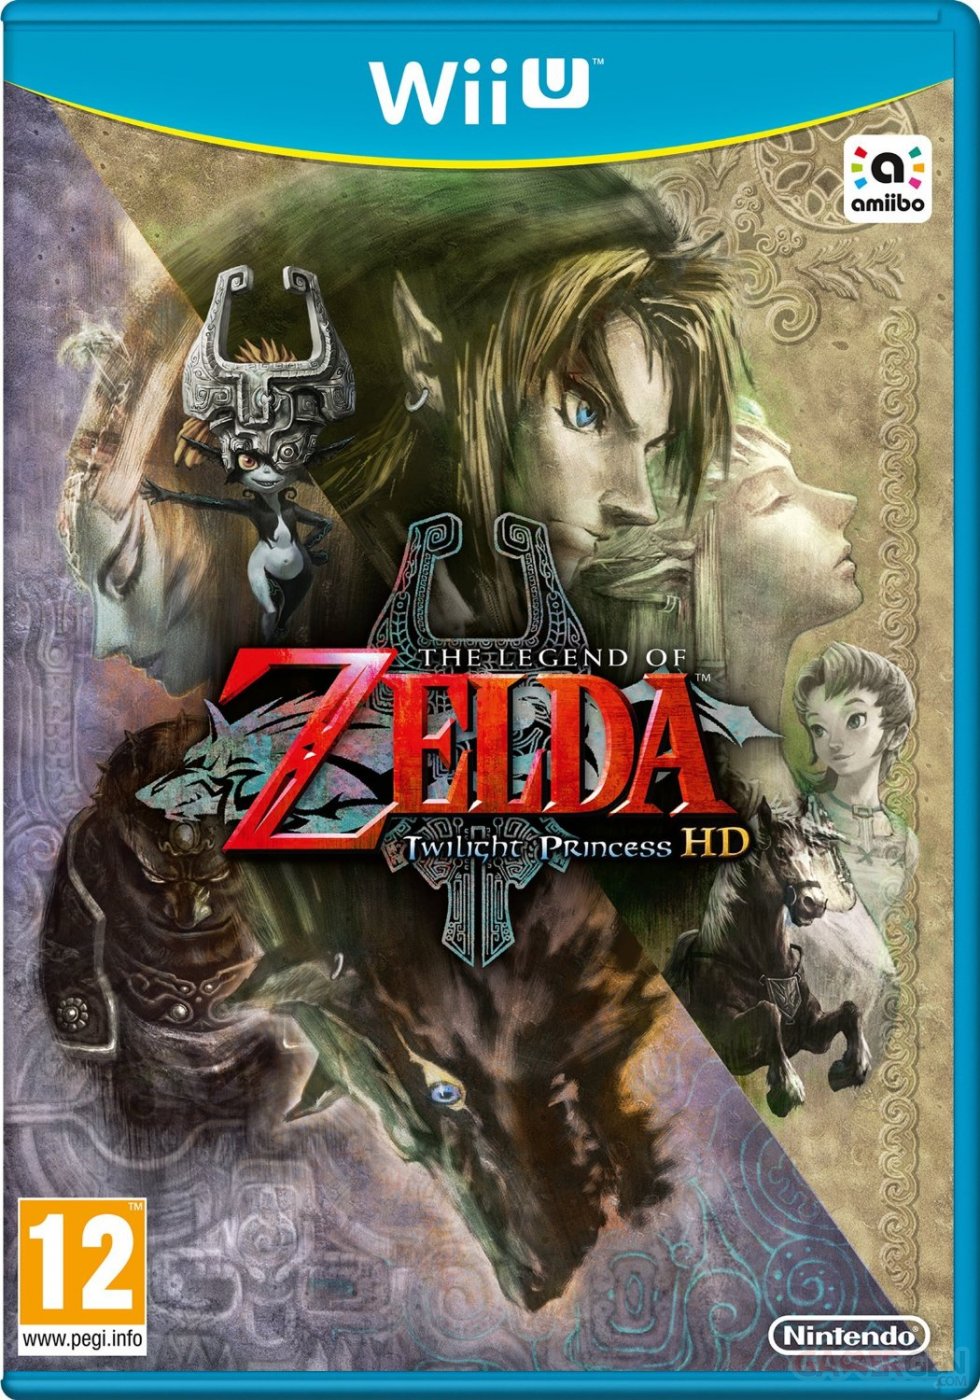 The Legend of Zelda Twilight Princess HD jaquette couverture coververdict note